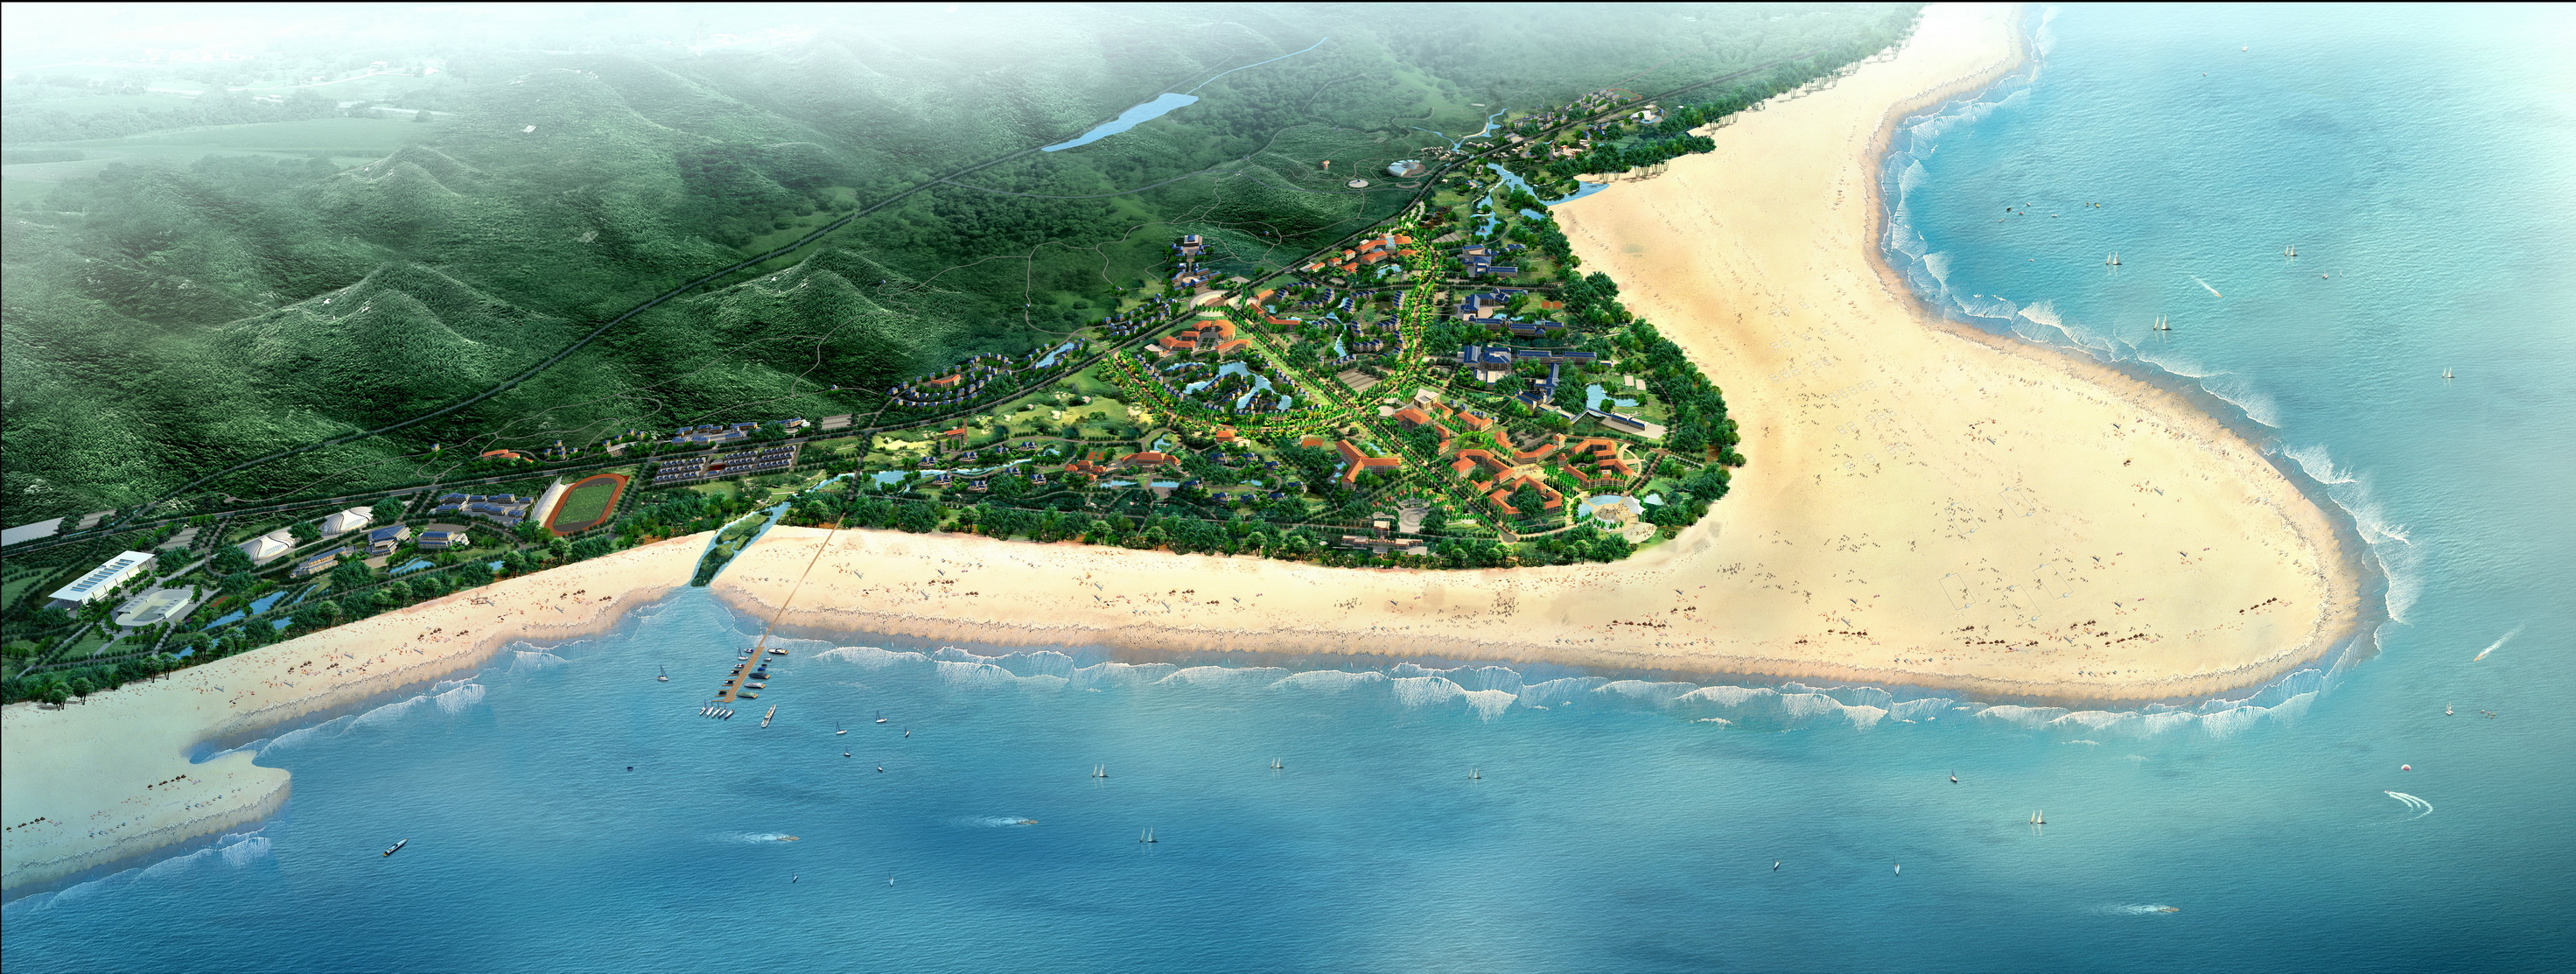 防城港市防城区江山半岛白浪滩旅游度假区控制性详细规划及城市设计